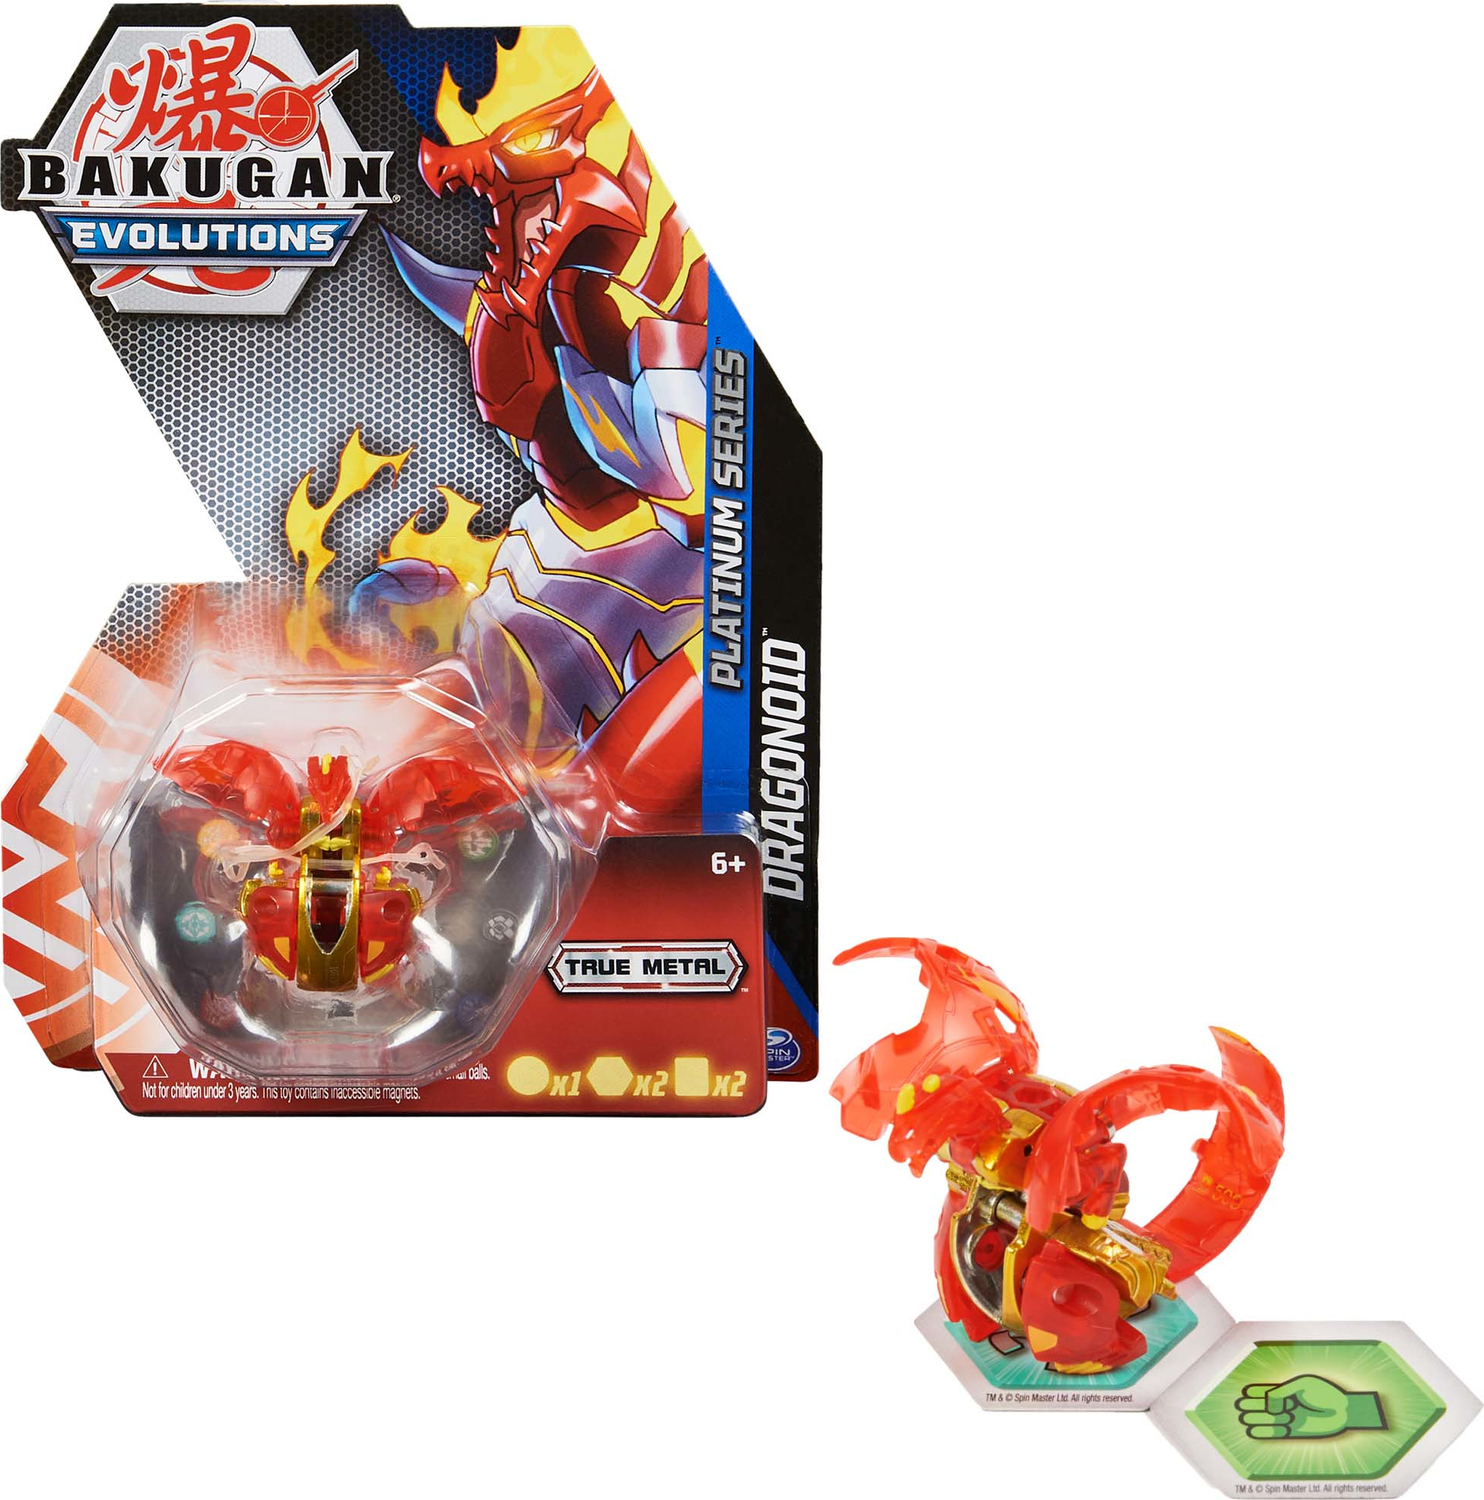 Bakugan BTB PlatinumSrsS4 Red GML Throwing top - Spin Master - Turtle Toys